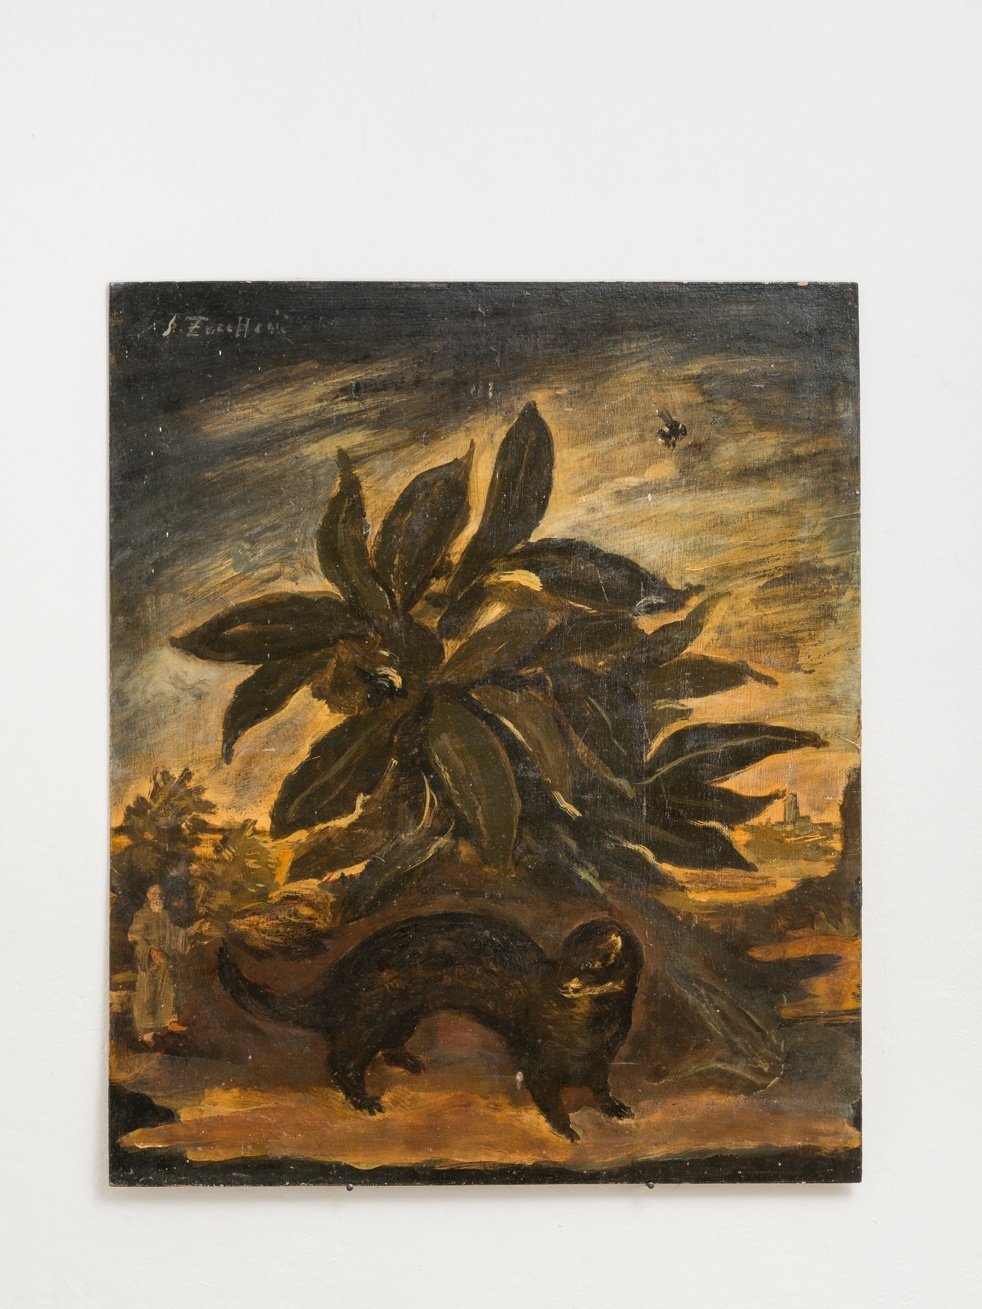 Luigi Zuccheri, Untitled (Cespuglio con faina, calabrone e frate), 1950/55, tempera on board, 40x45 cm. Courtesy MMXX Milan.